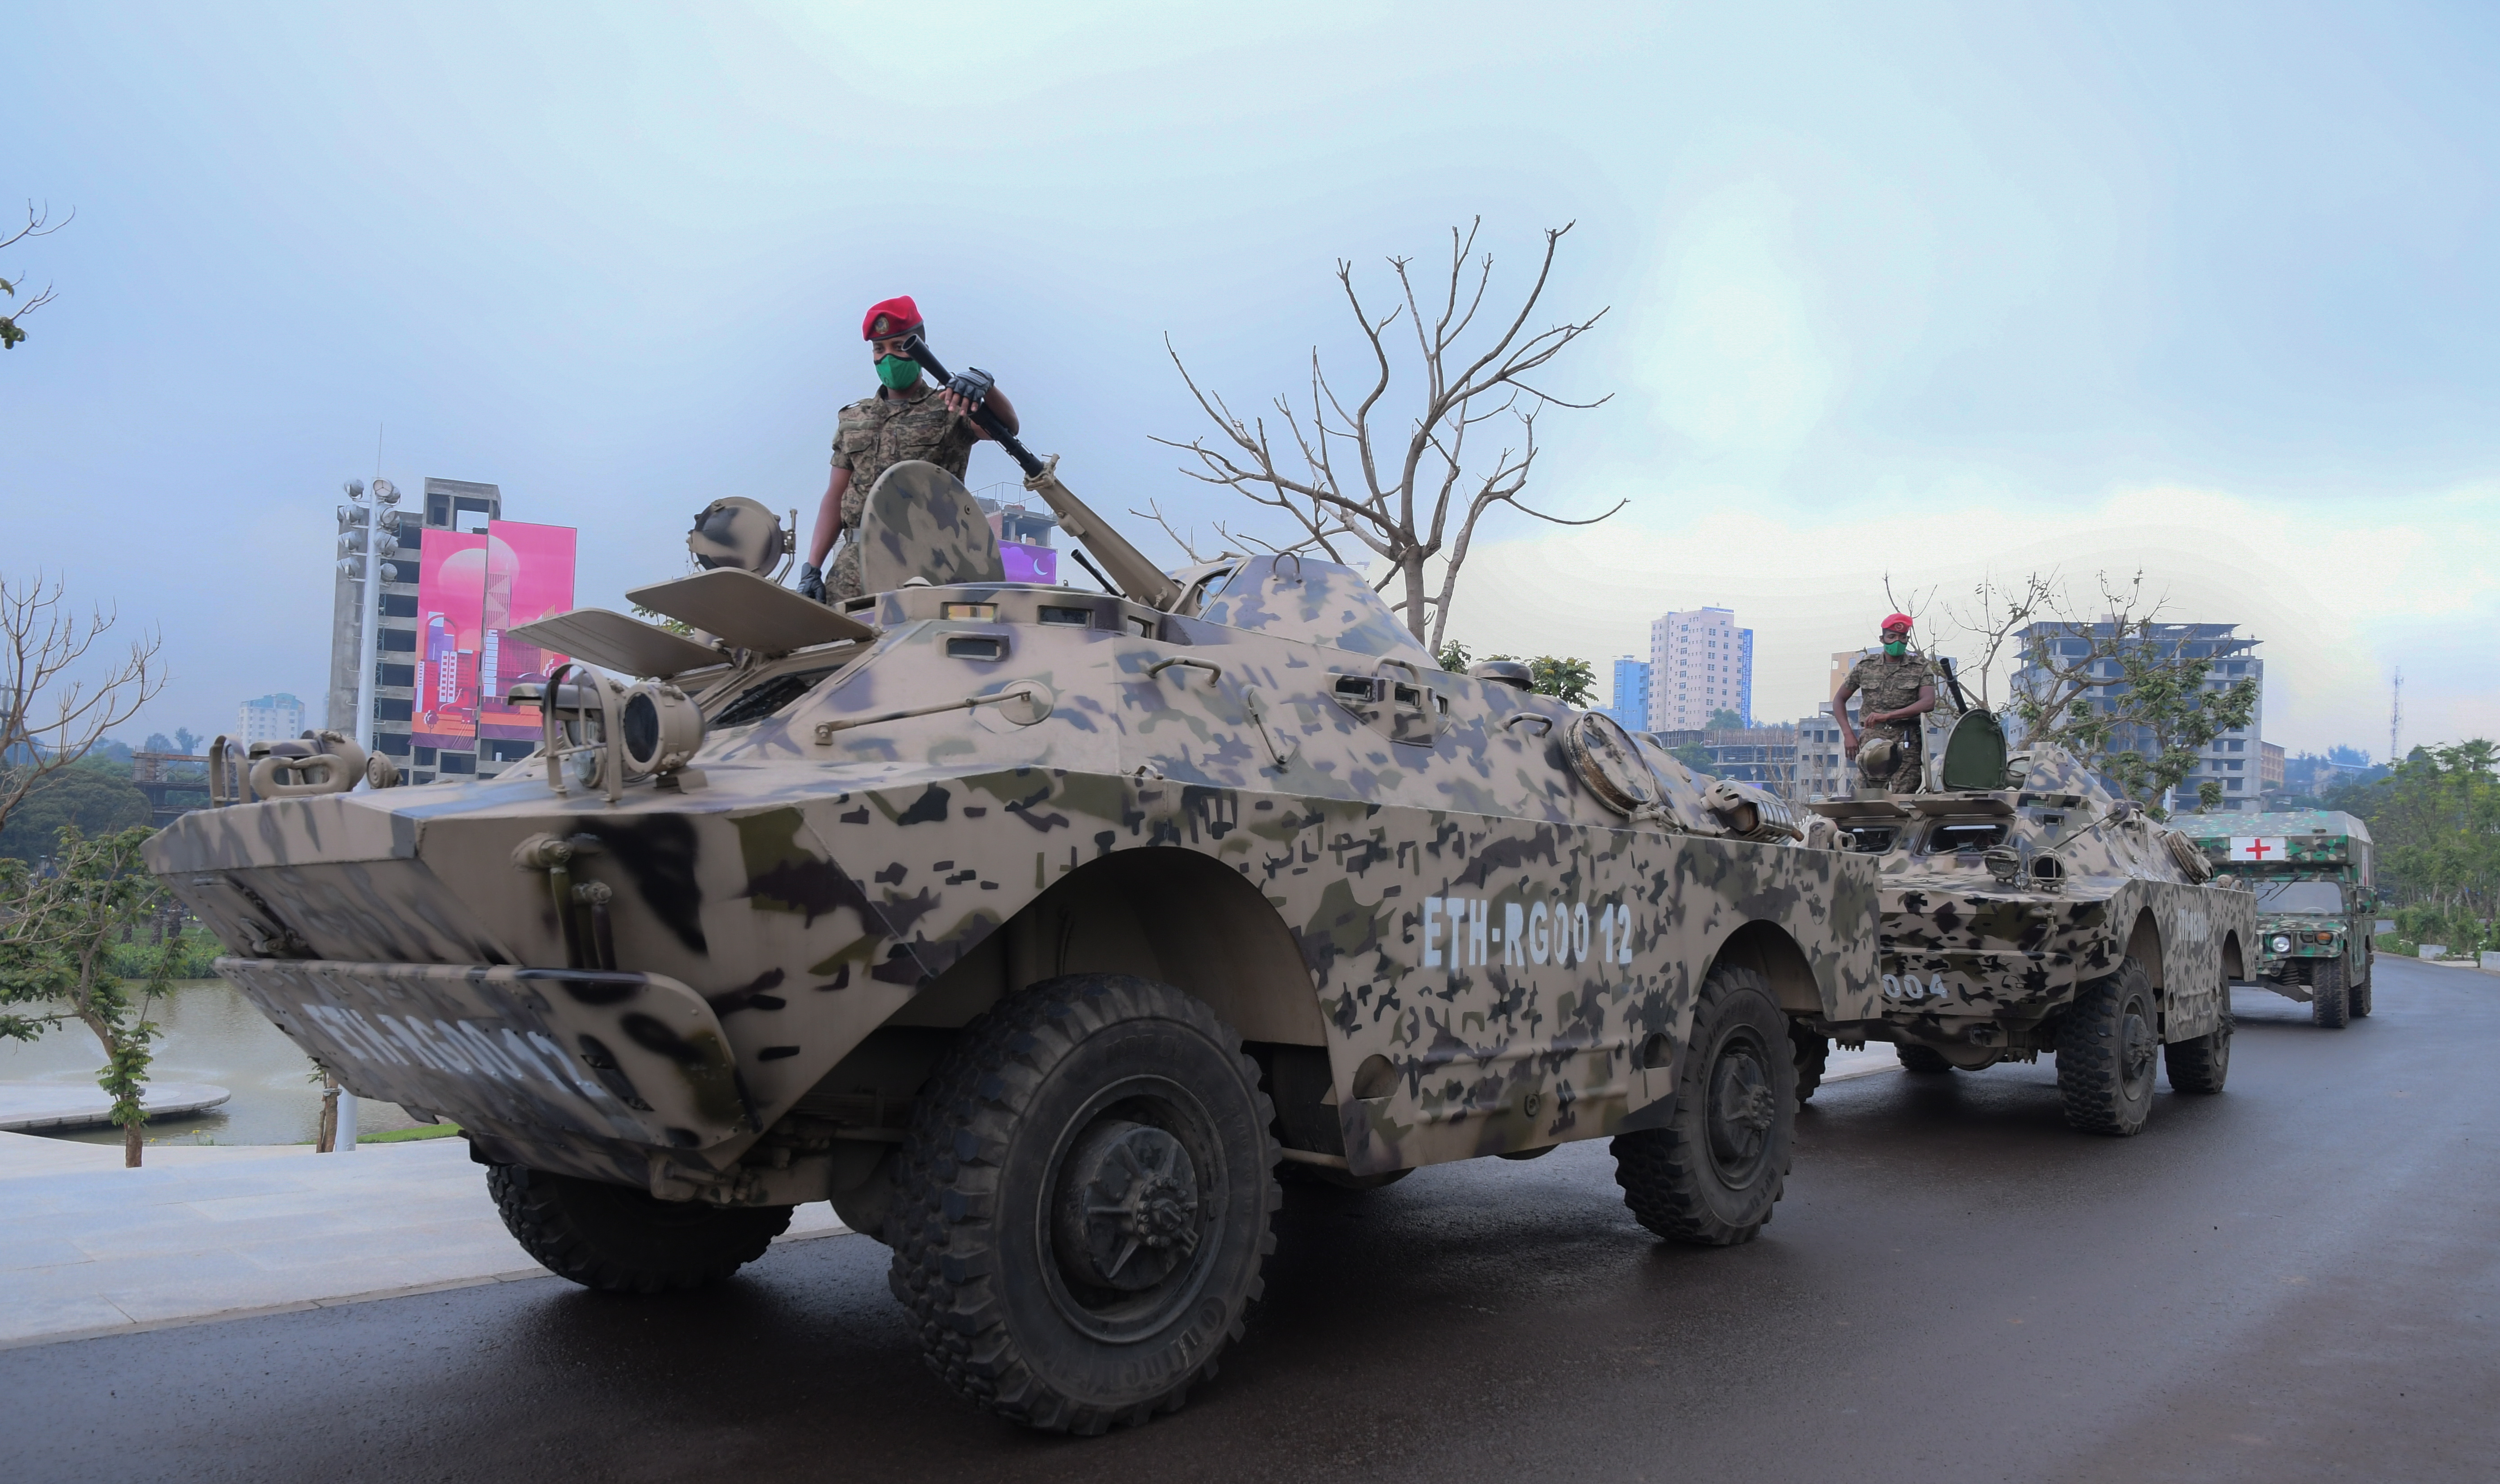 El Ejército de Sudán anunció este viernes que acepta la tregua de tres días ofrecida por las Fuerzas de Apoyo Rápido (RSF) con motivo del fin del Ramadán, pero pocas horas después de este anuncio ambos contendientes han vuelto a acusarse mutuamente de violar la tregua anunciada. (EFE)
